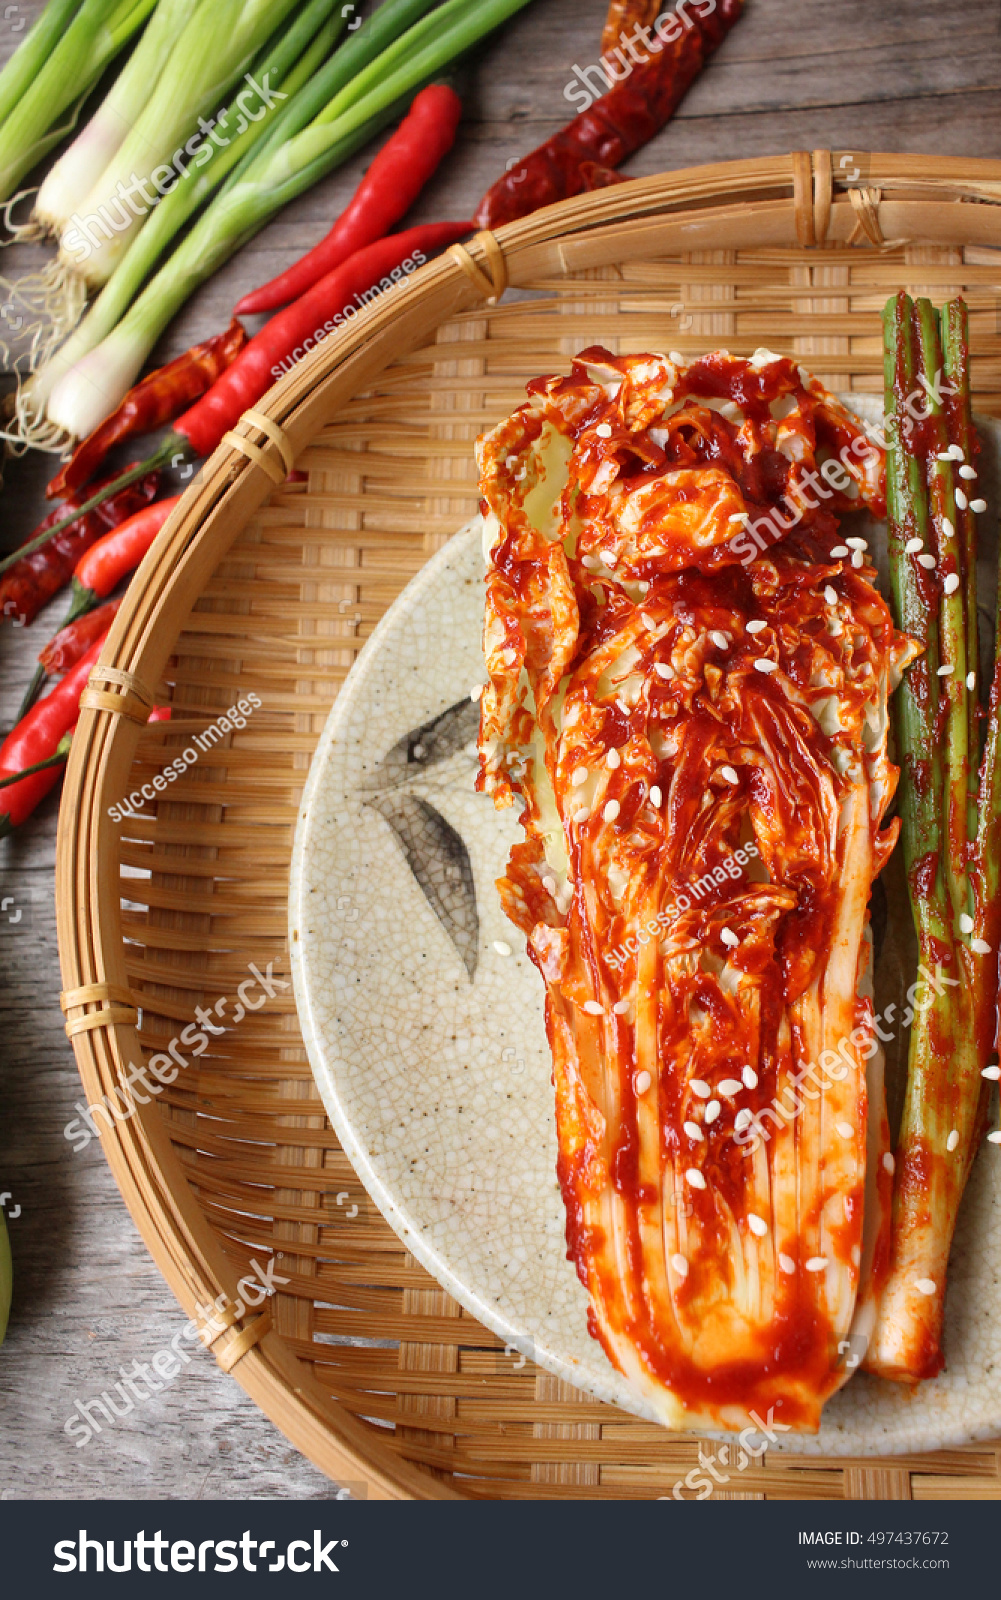 Kimchi Korean Food Stock Photo 497437672 : Shutterstock